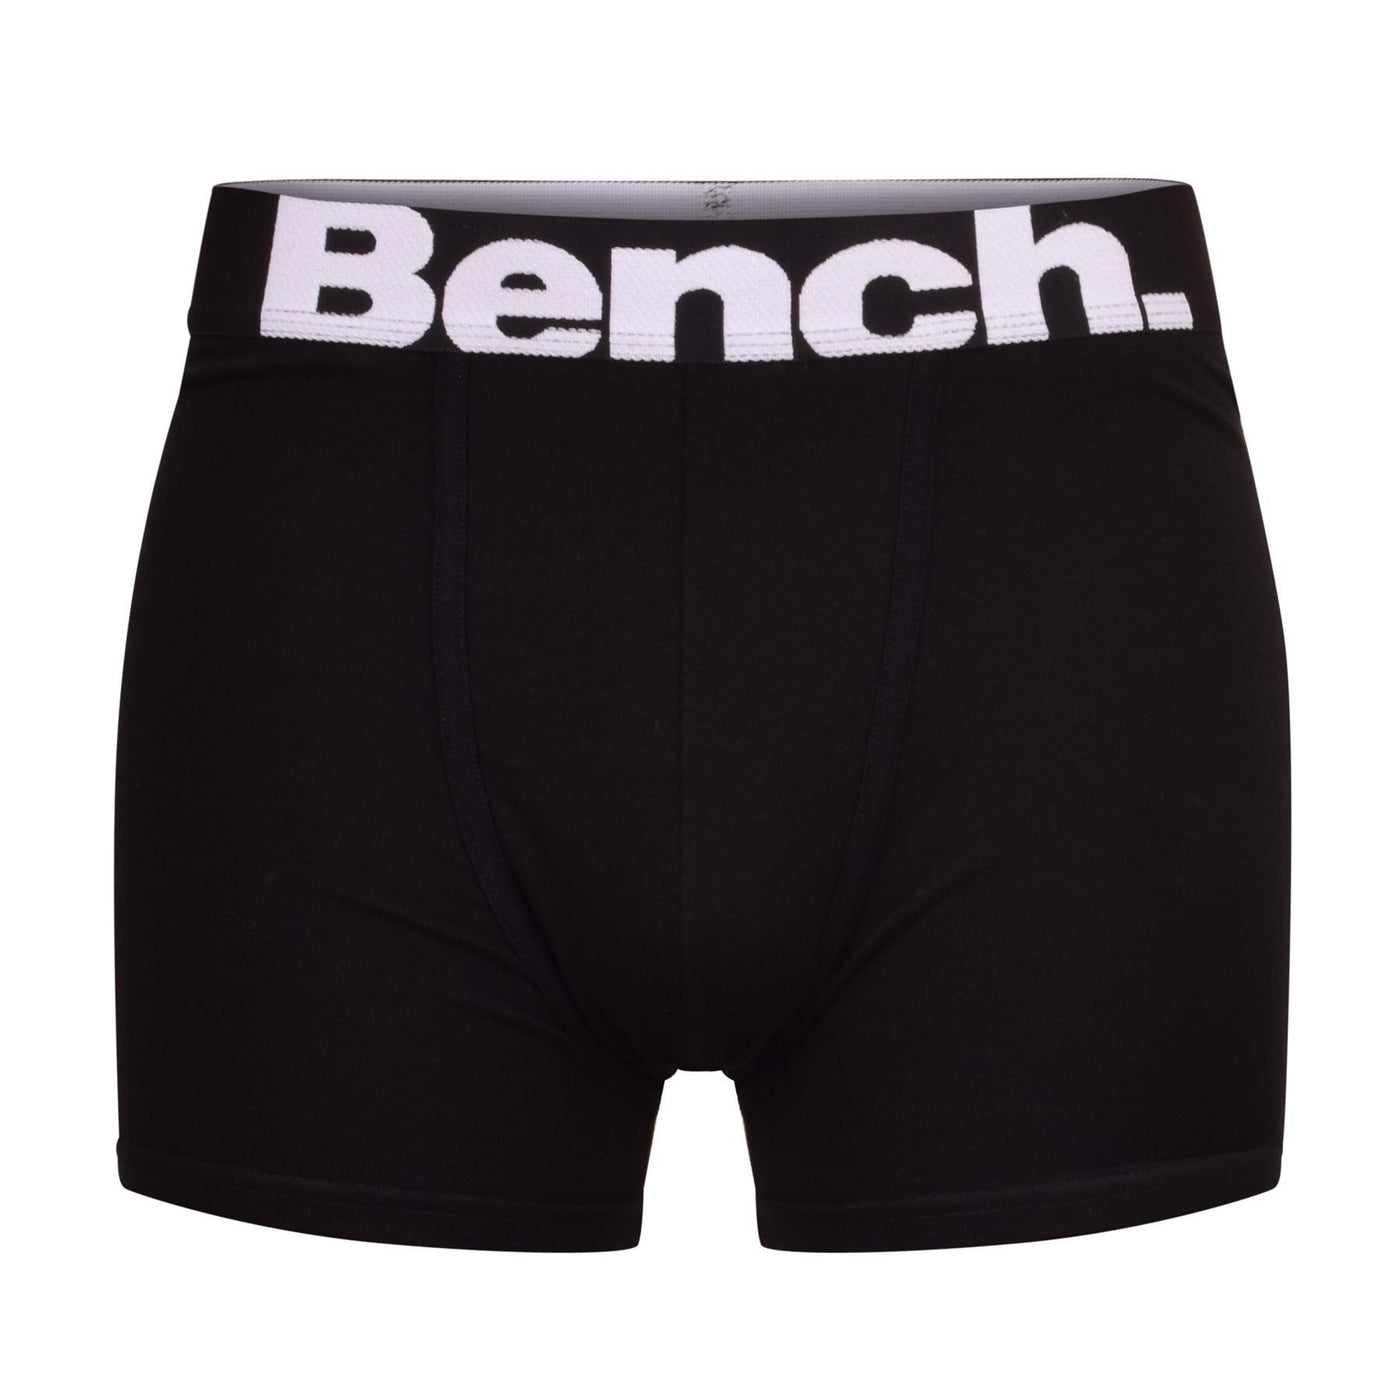 Bench 3 Pack Mens Plain Black Boxers Underwear Boxer Shorts Under Pants Gift Set